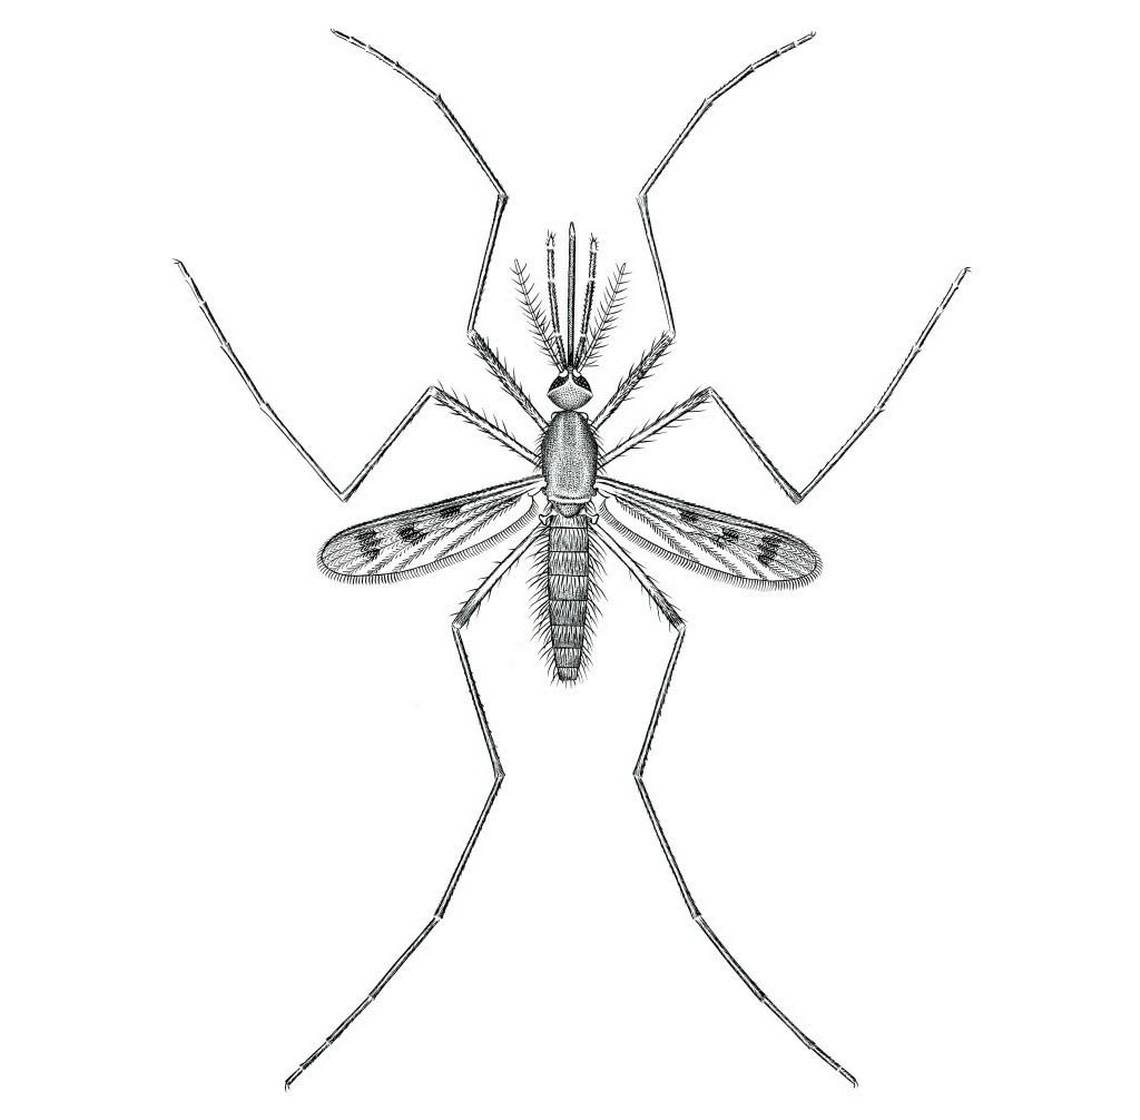 Anopheles quadrimaculatus: The common malaria mosquito.